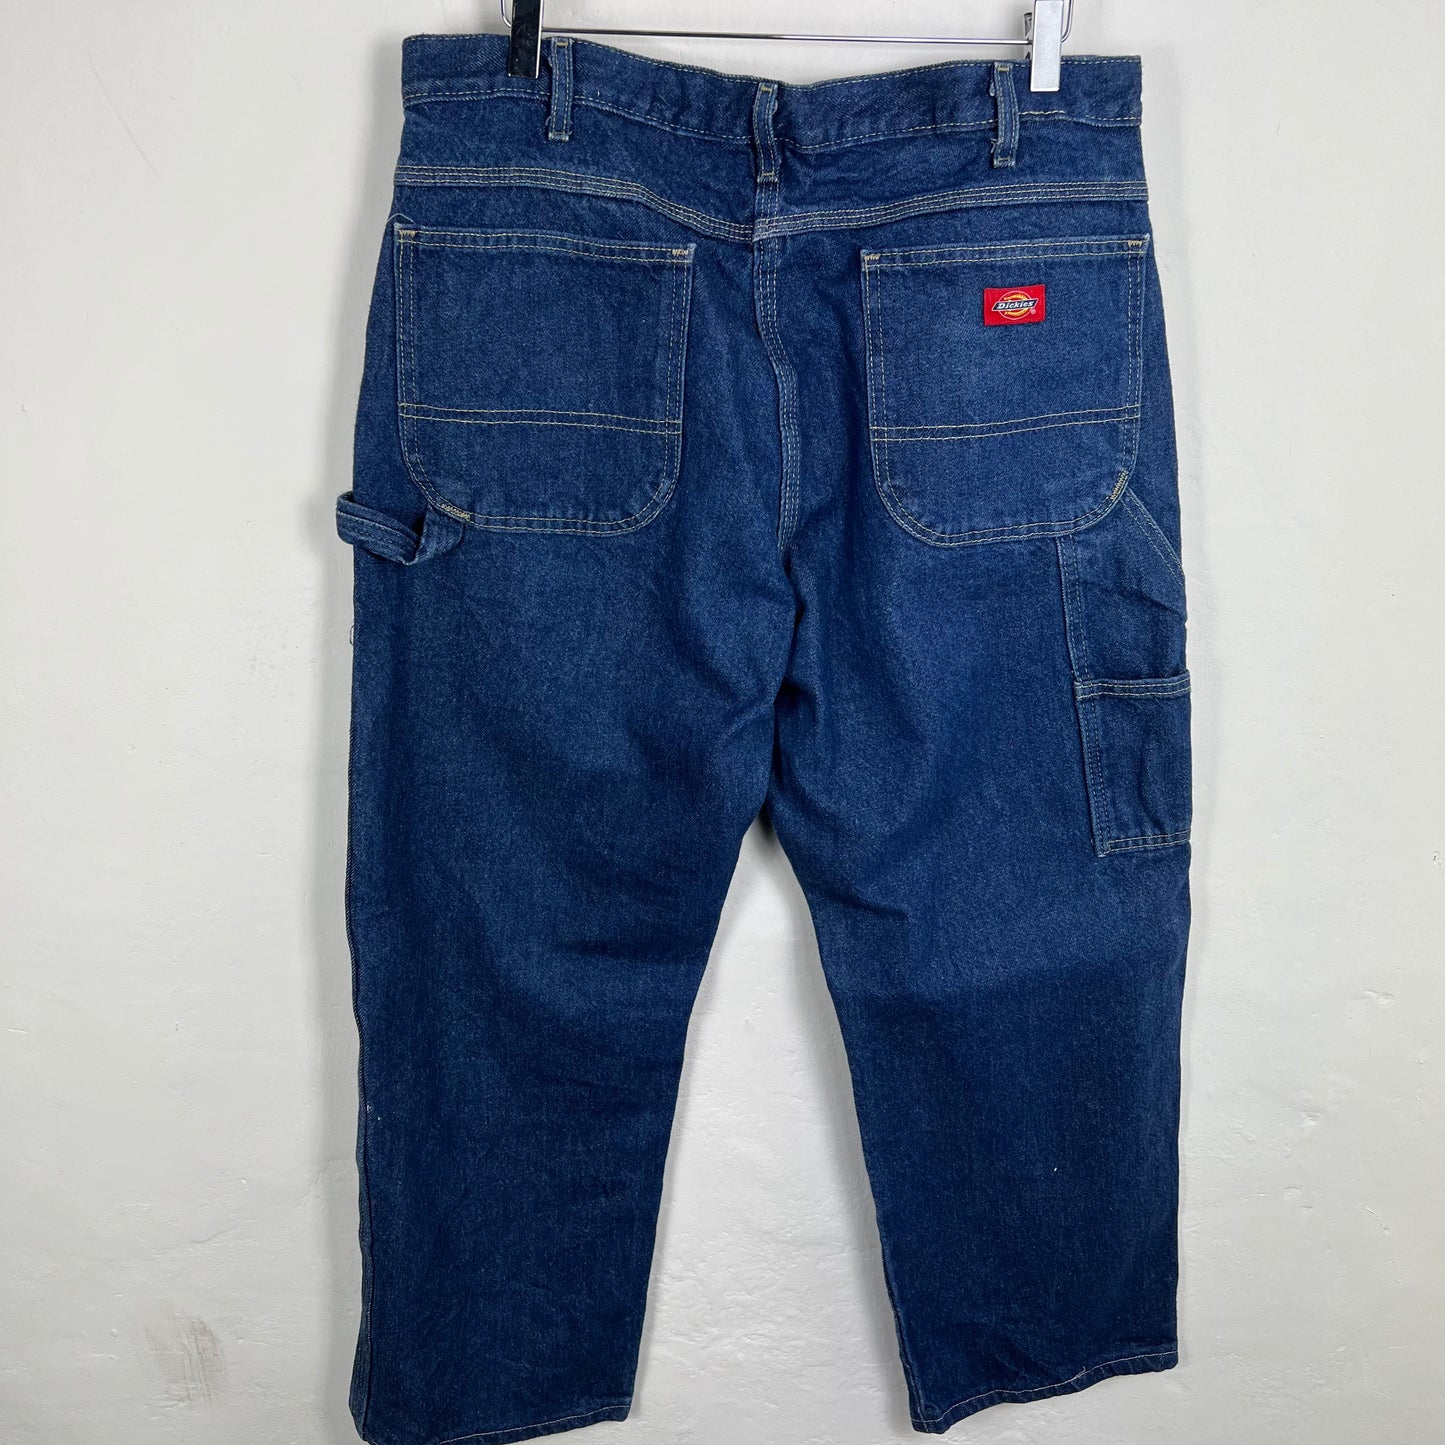 Dickies jeans 36x30